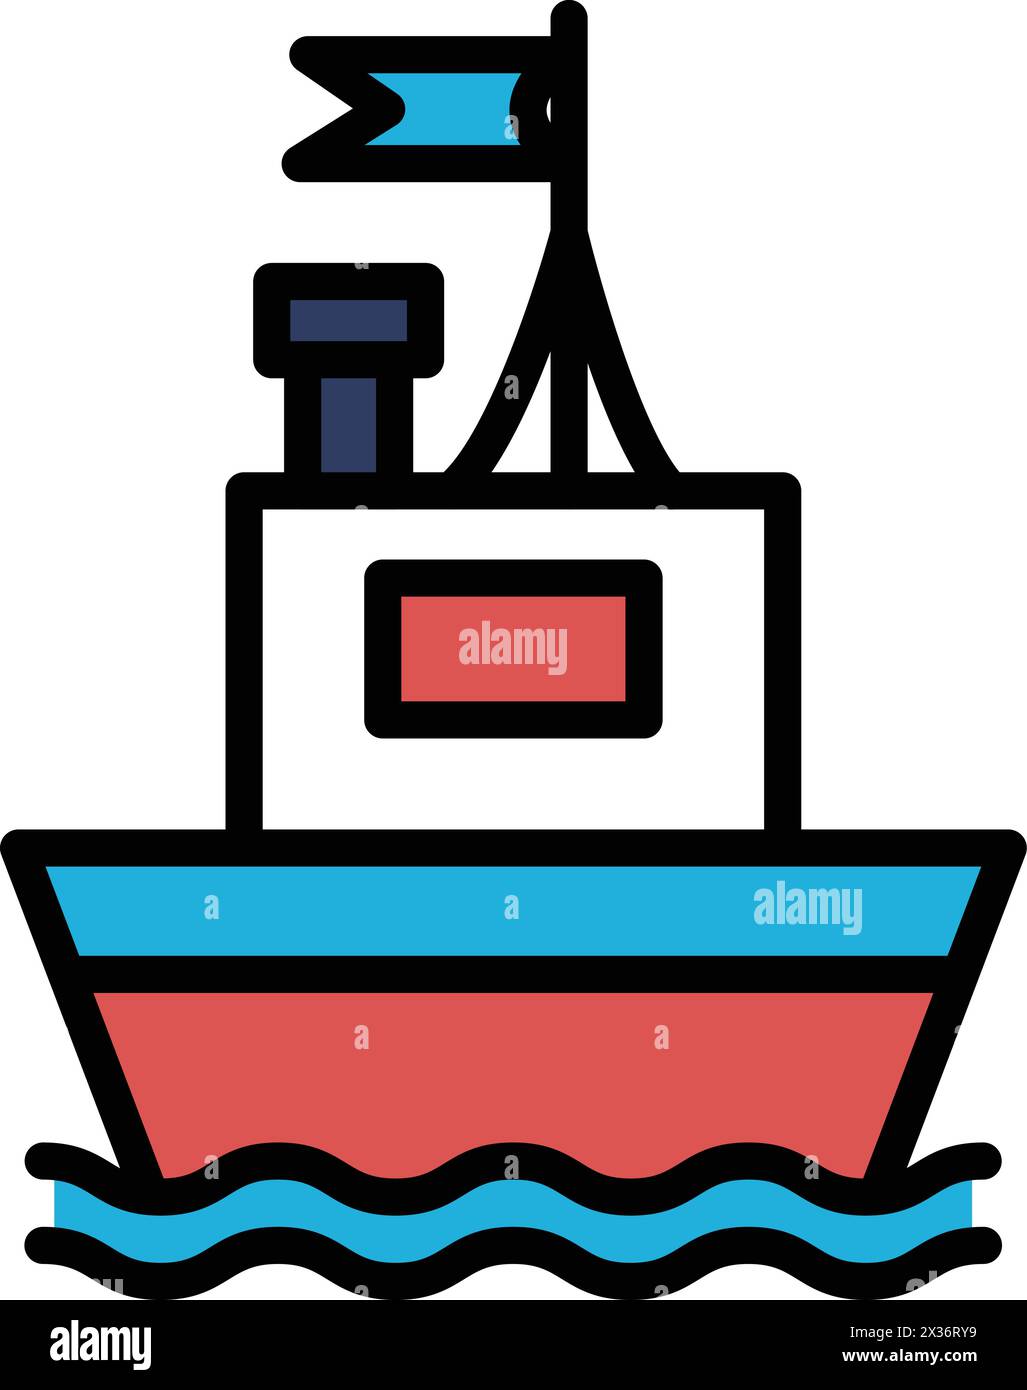 Un bateau flotte sur l'eau avec un drapeau sur le dessus. Le drapeau est blanc et rouge Illustration de Vecteur